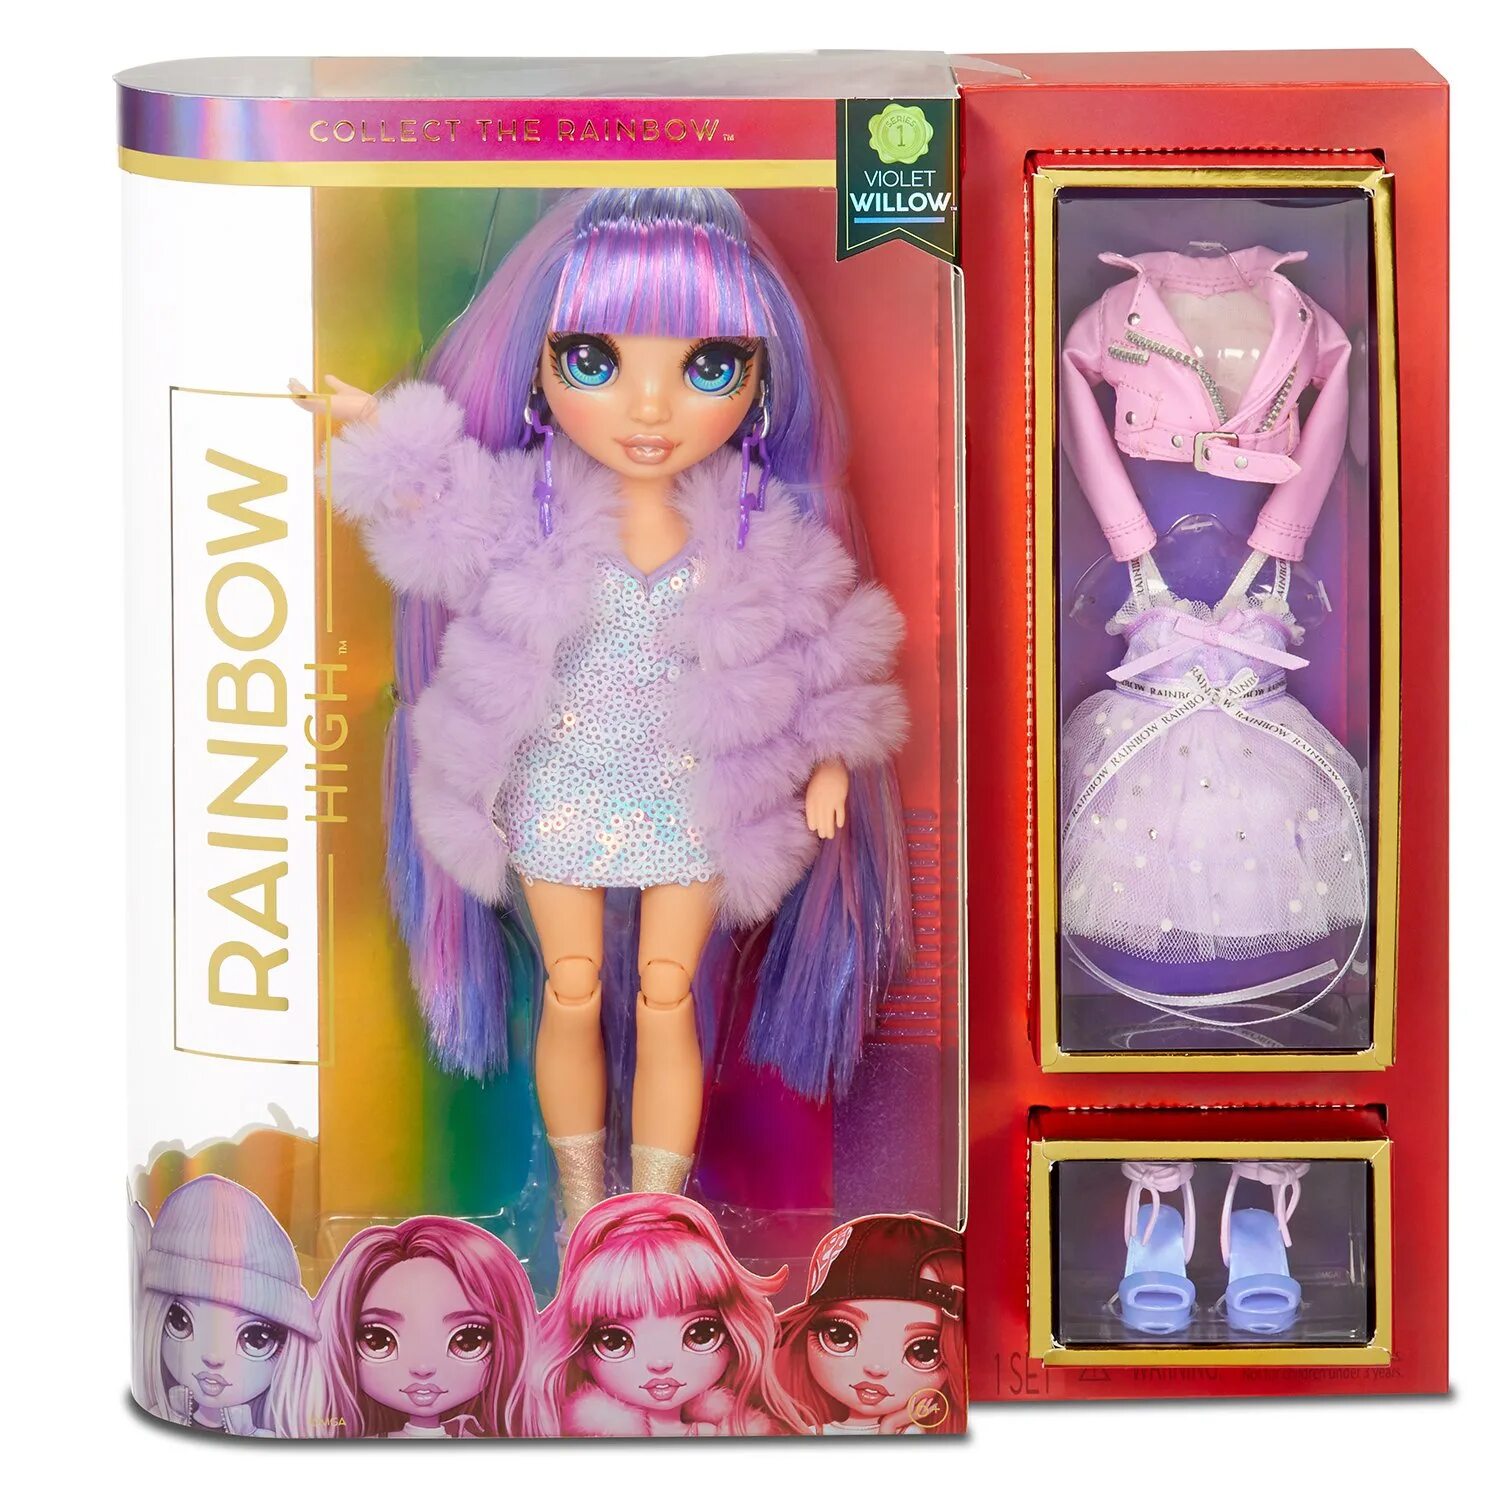 Кукла рейнбоу купить. Кукла Rainbow High Violet. Кукла Rainbow High Violet Willow. Rainbow High 569602 кукла Violet Willows.